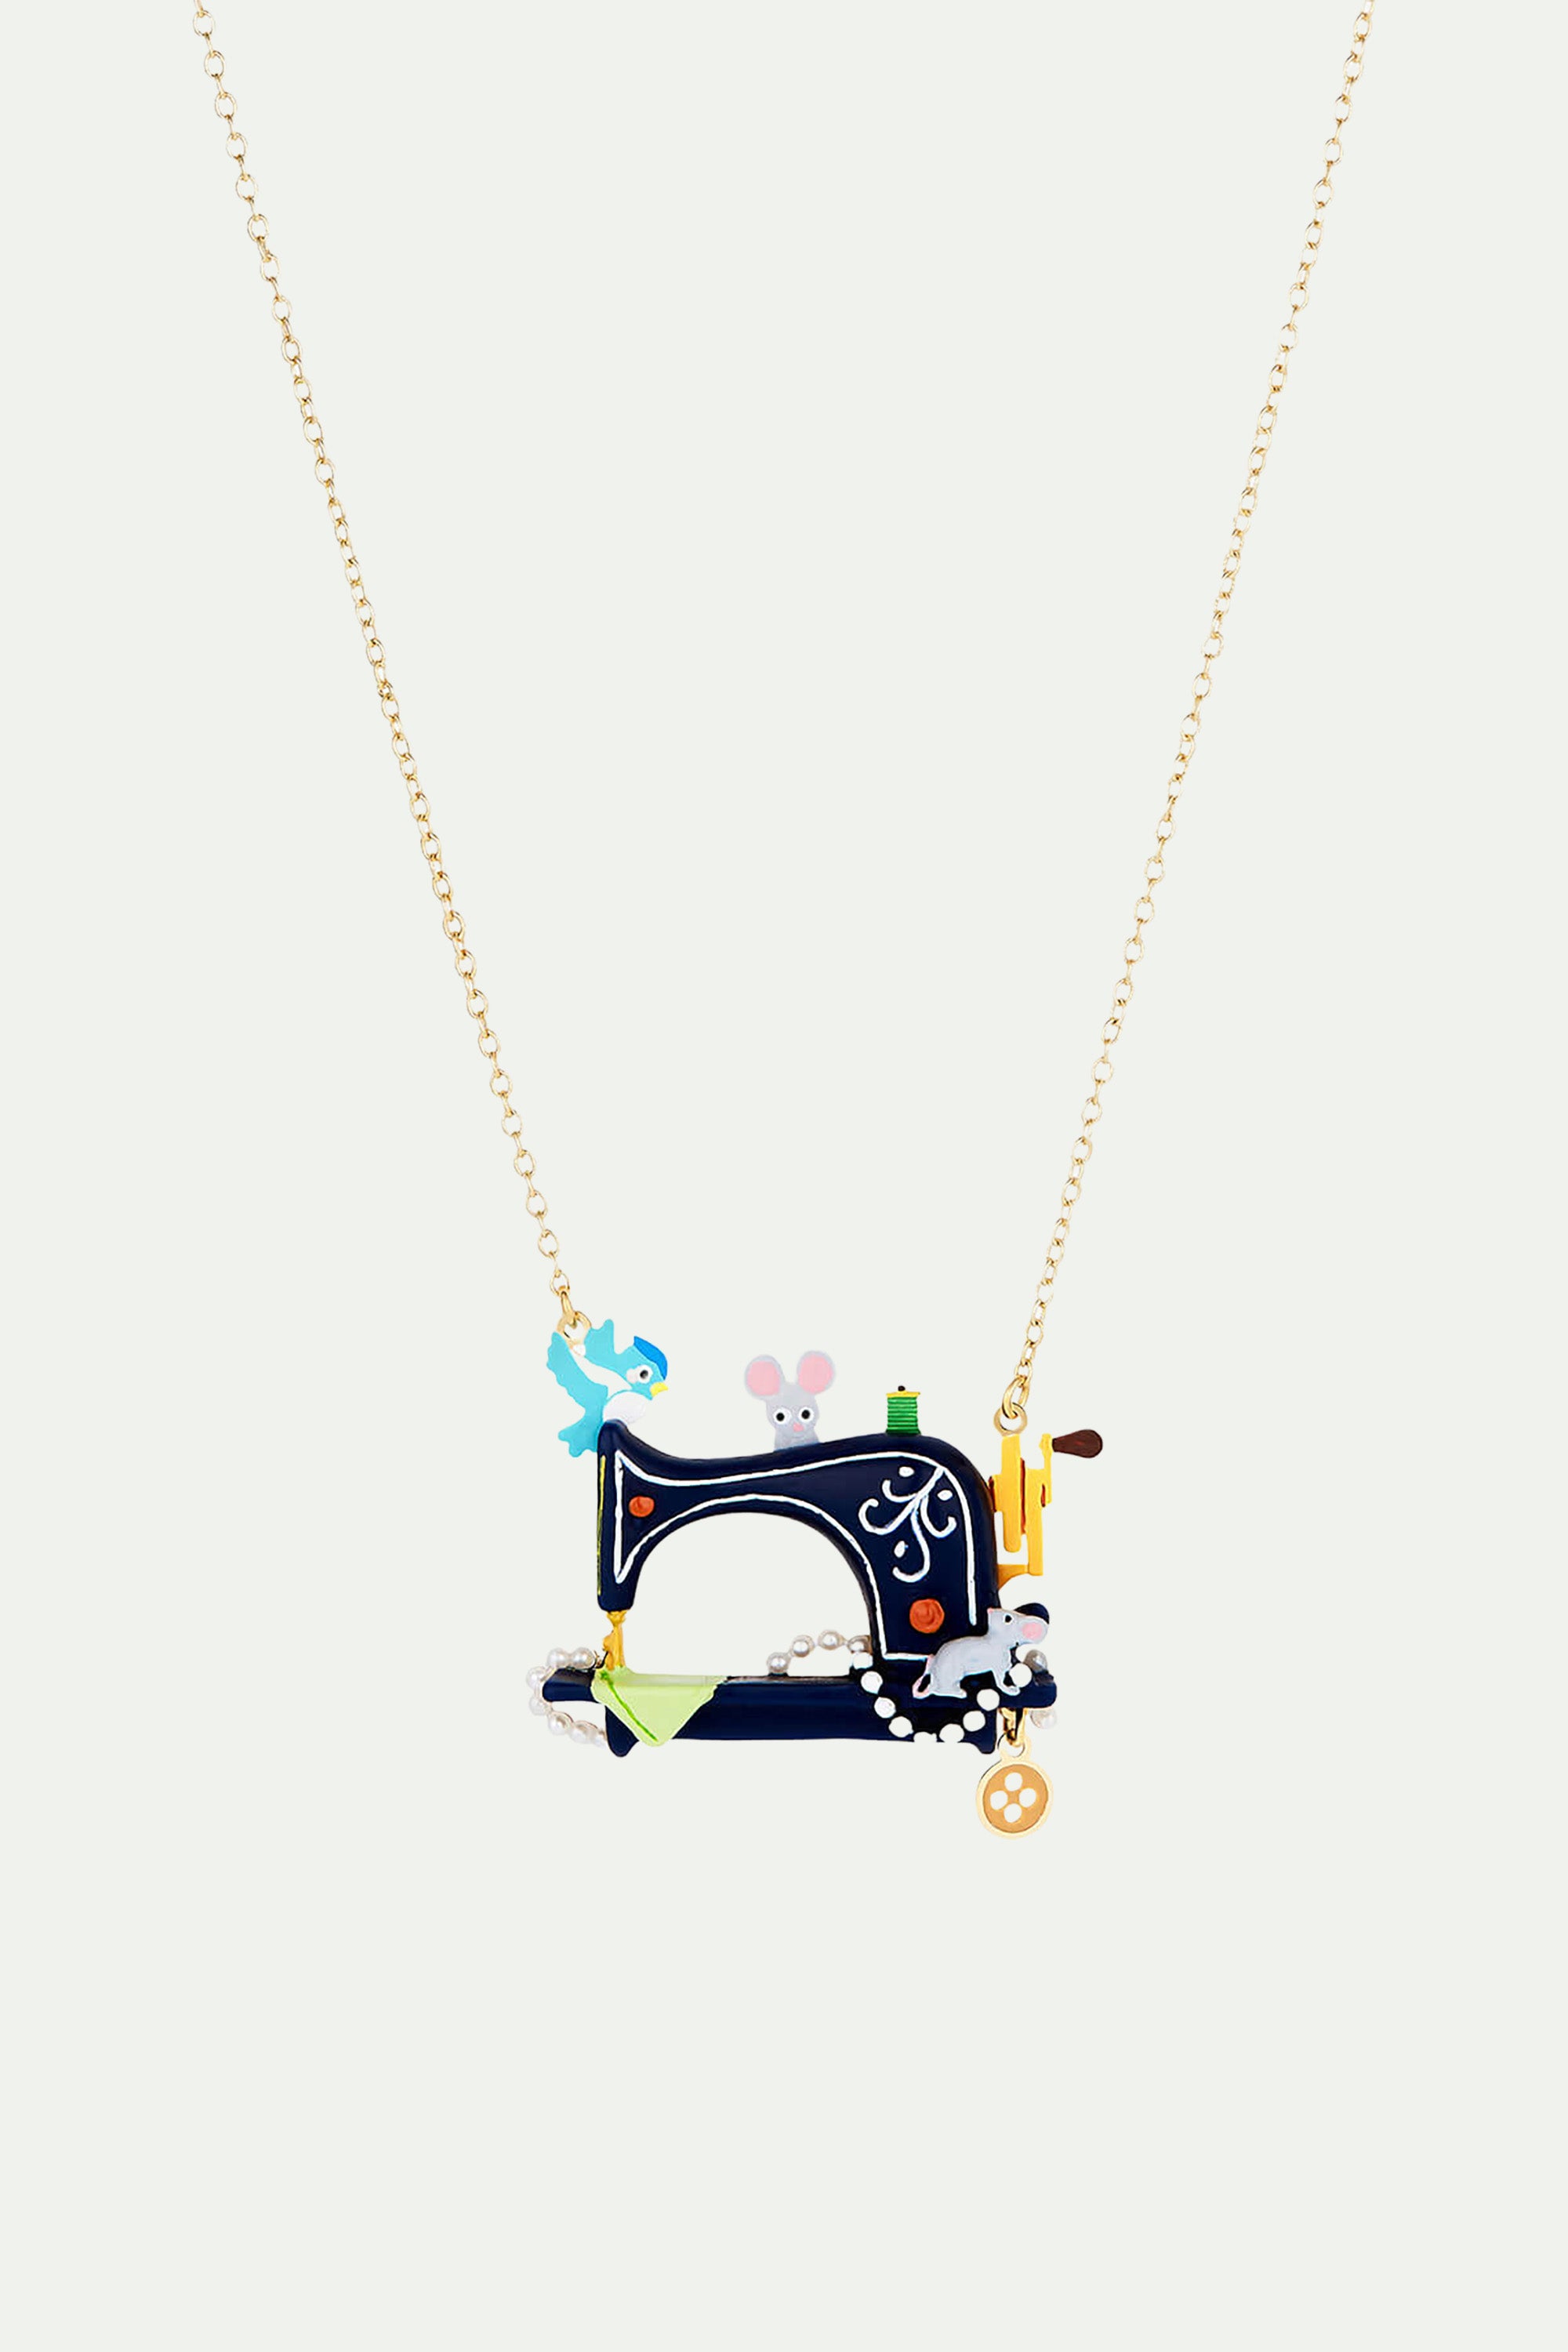 Collier pendentif oiseau, souris, machine à coudre, perles et bouton